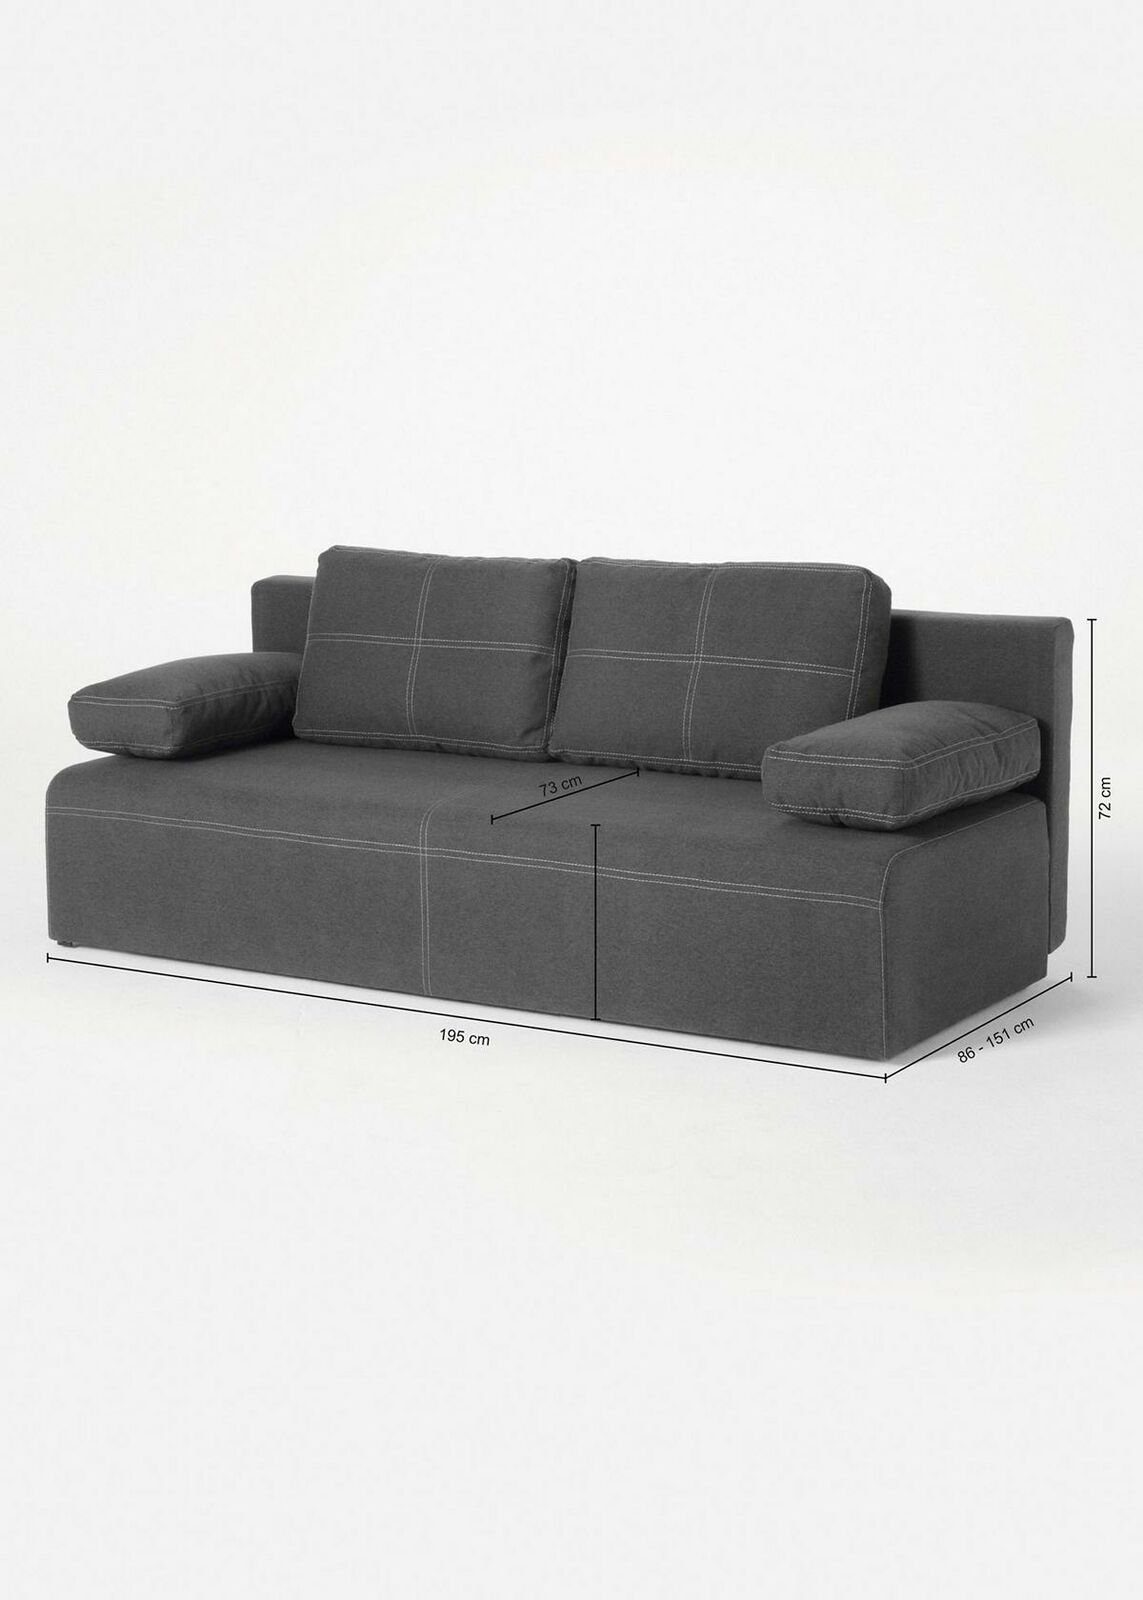 JVmoebel Sofa Grüner Dreisitzer Stoffsofa Luxus Design Möbel Couch Neu, Made in Europe Grau